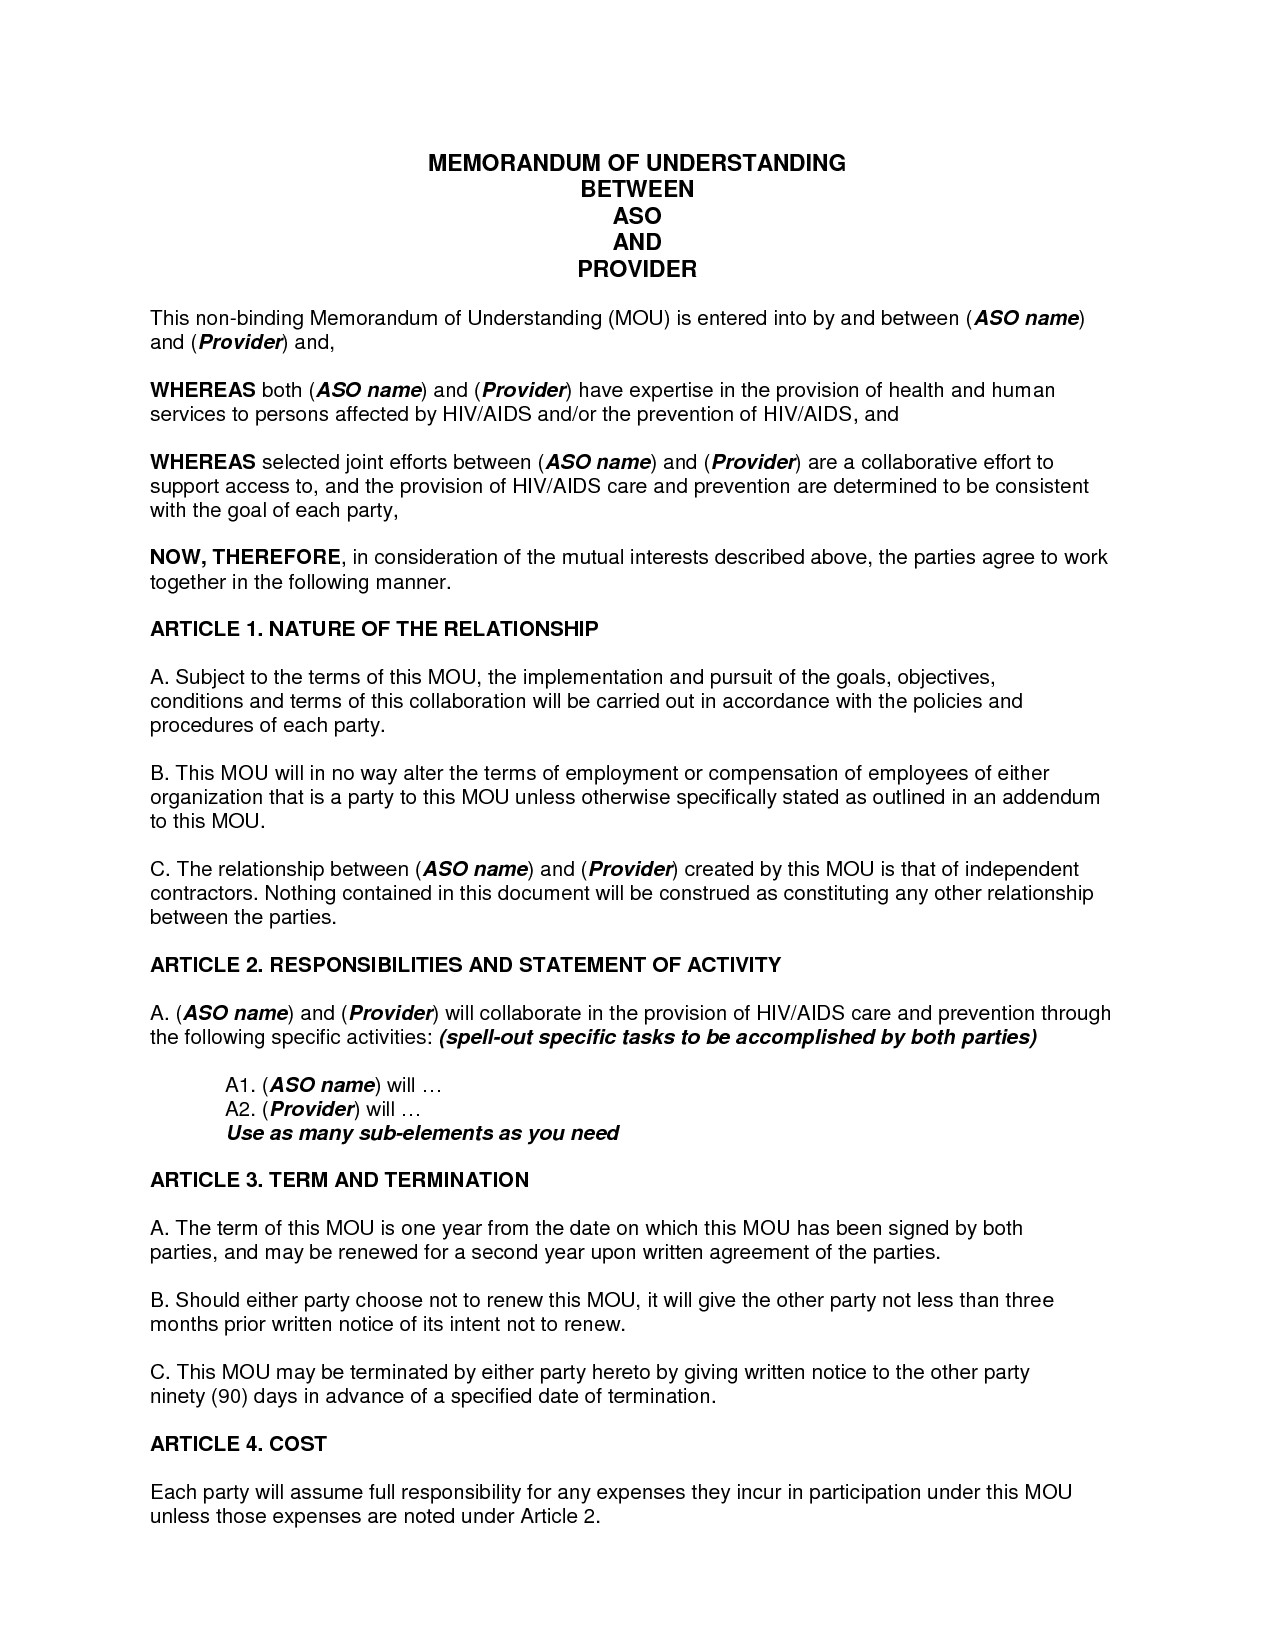 Sample Memorandum Of Understanding Business Partnership DOC By Document For